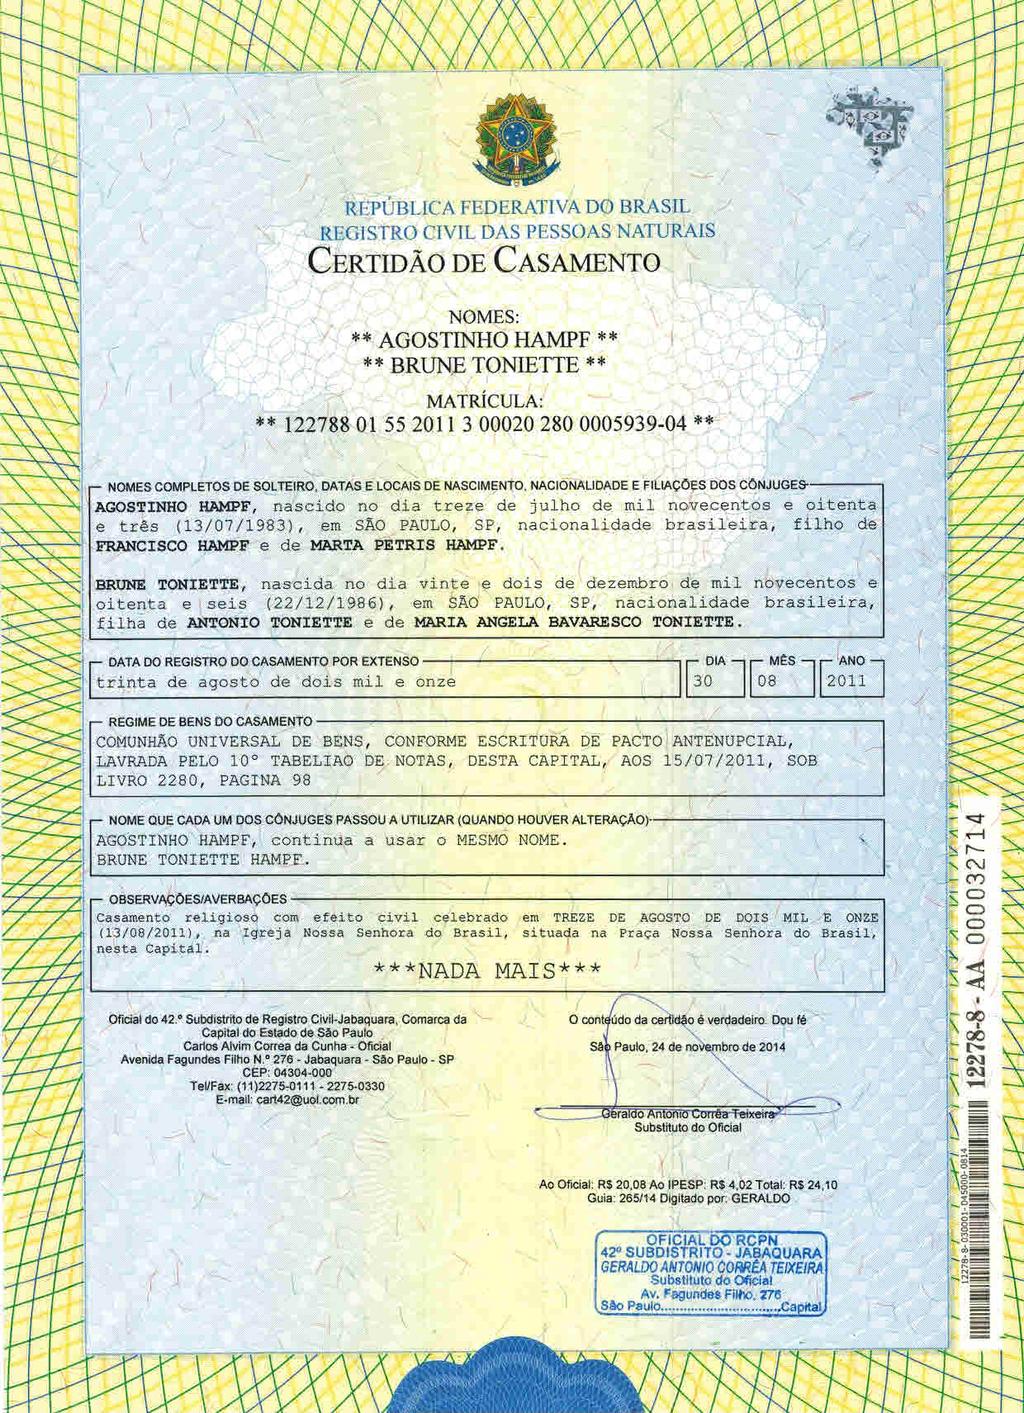 fls. 50 Este documento é cópia do original, assinado digitalmente por CECILIA SILVEIRA GONCALVES e Tribunal de Justica de Sao Paulo, protocolado em 28/01/2015 às 16:38, sob o número